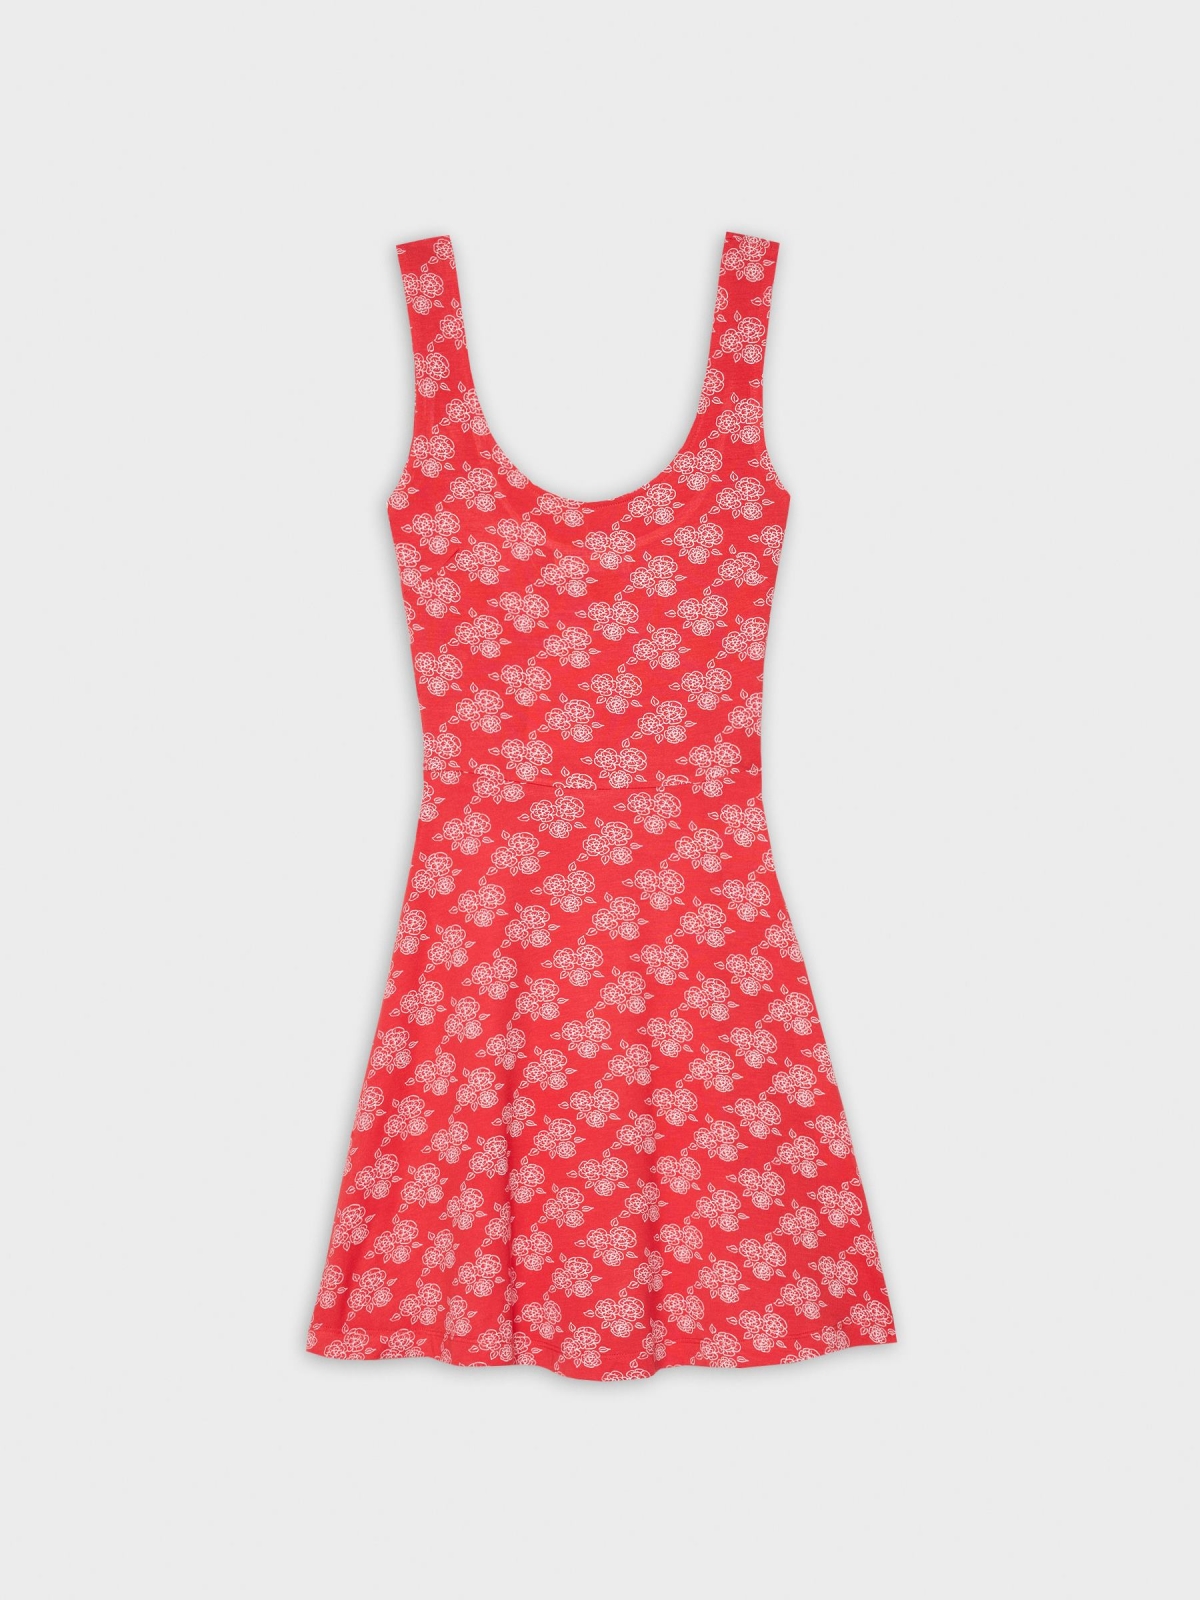  Mini vestido com estampas florais vermelho